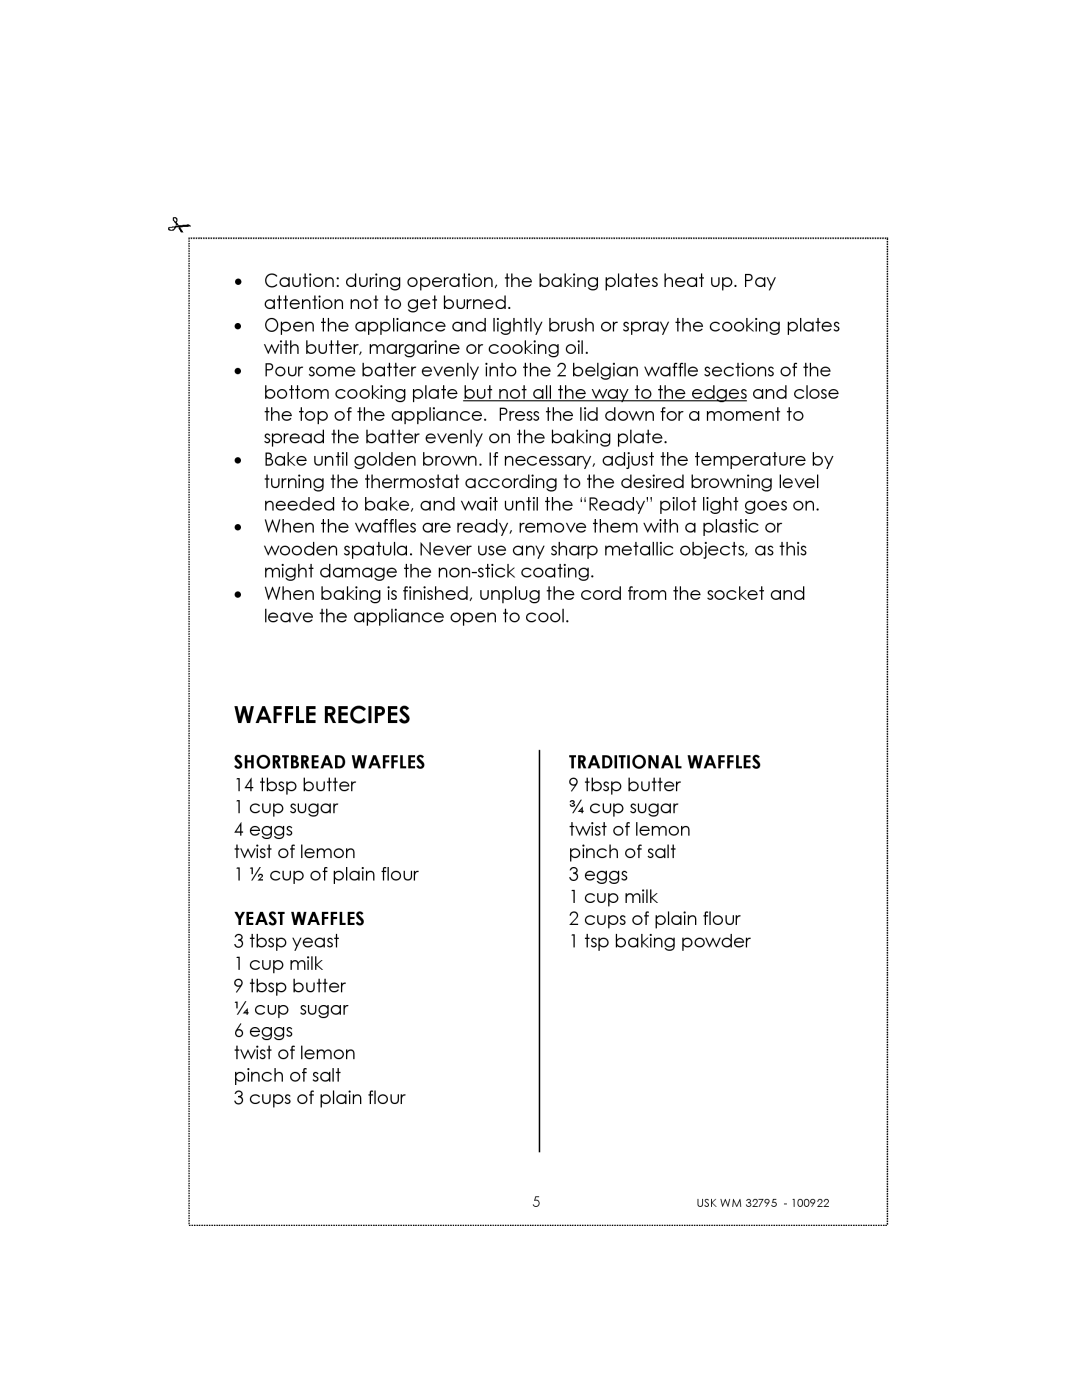 Kalorik USK WM 32795 manual Waffle Recipes 